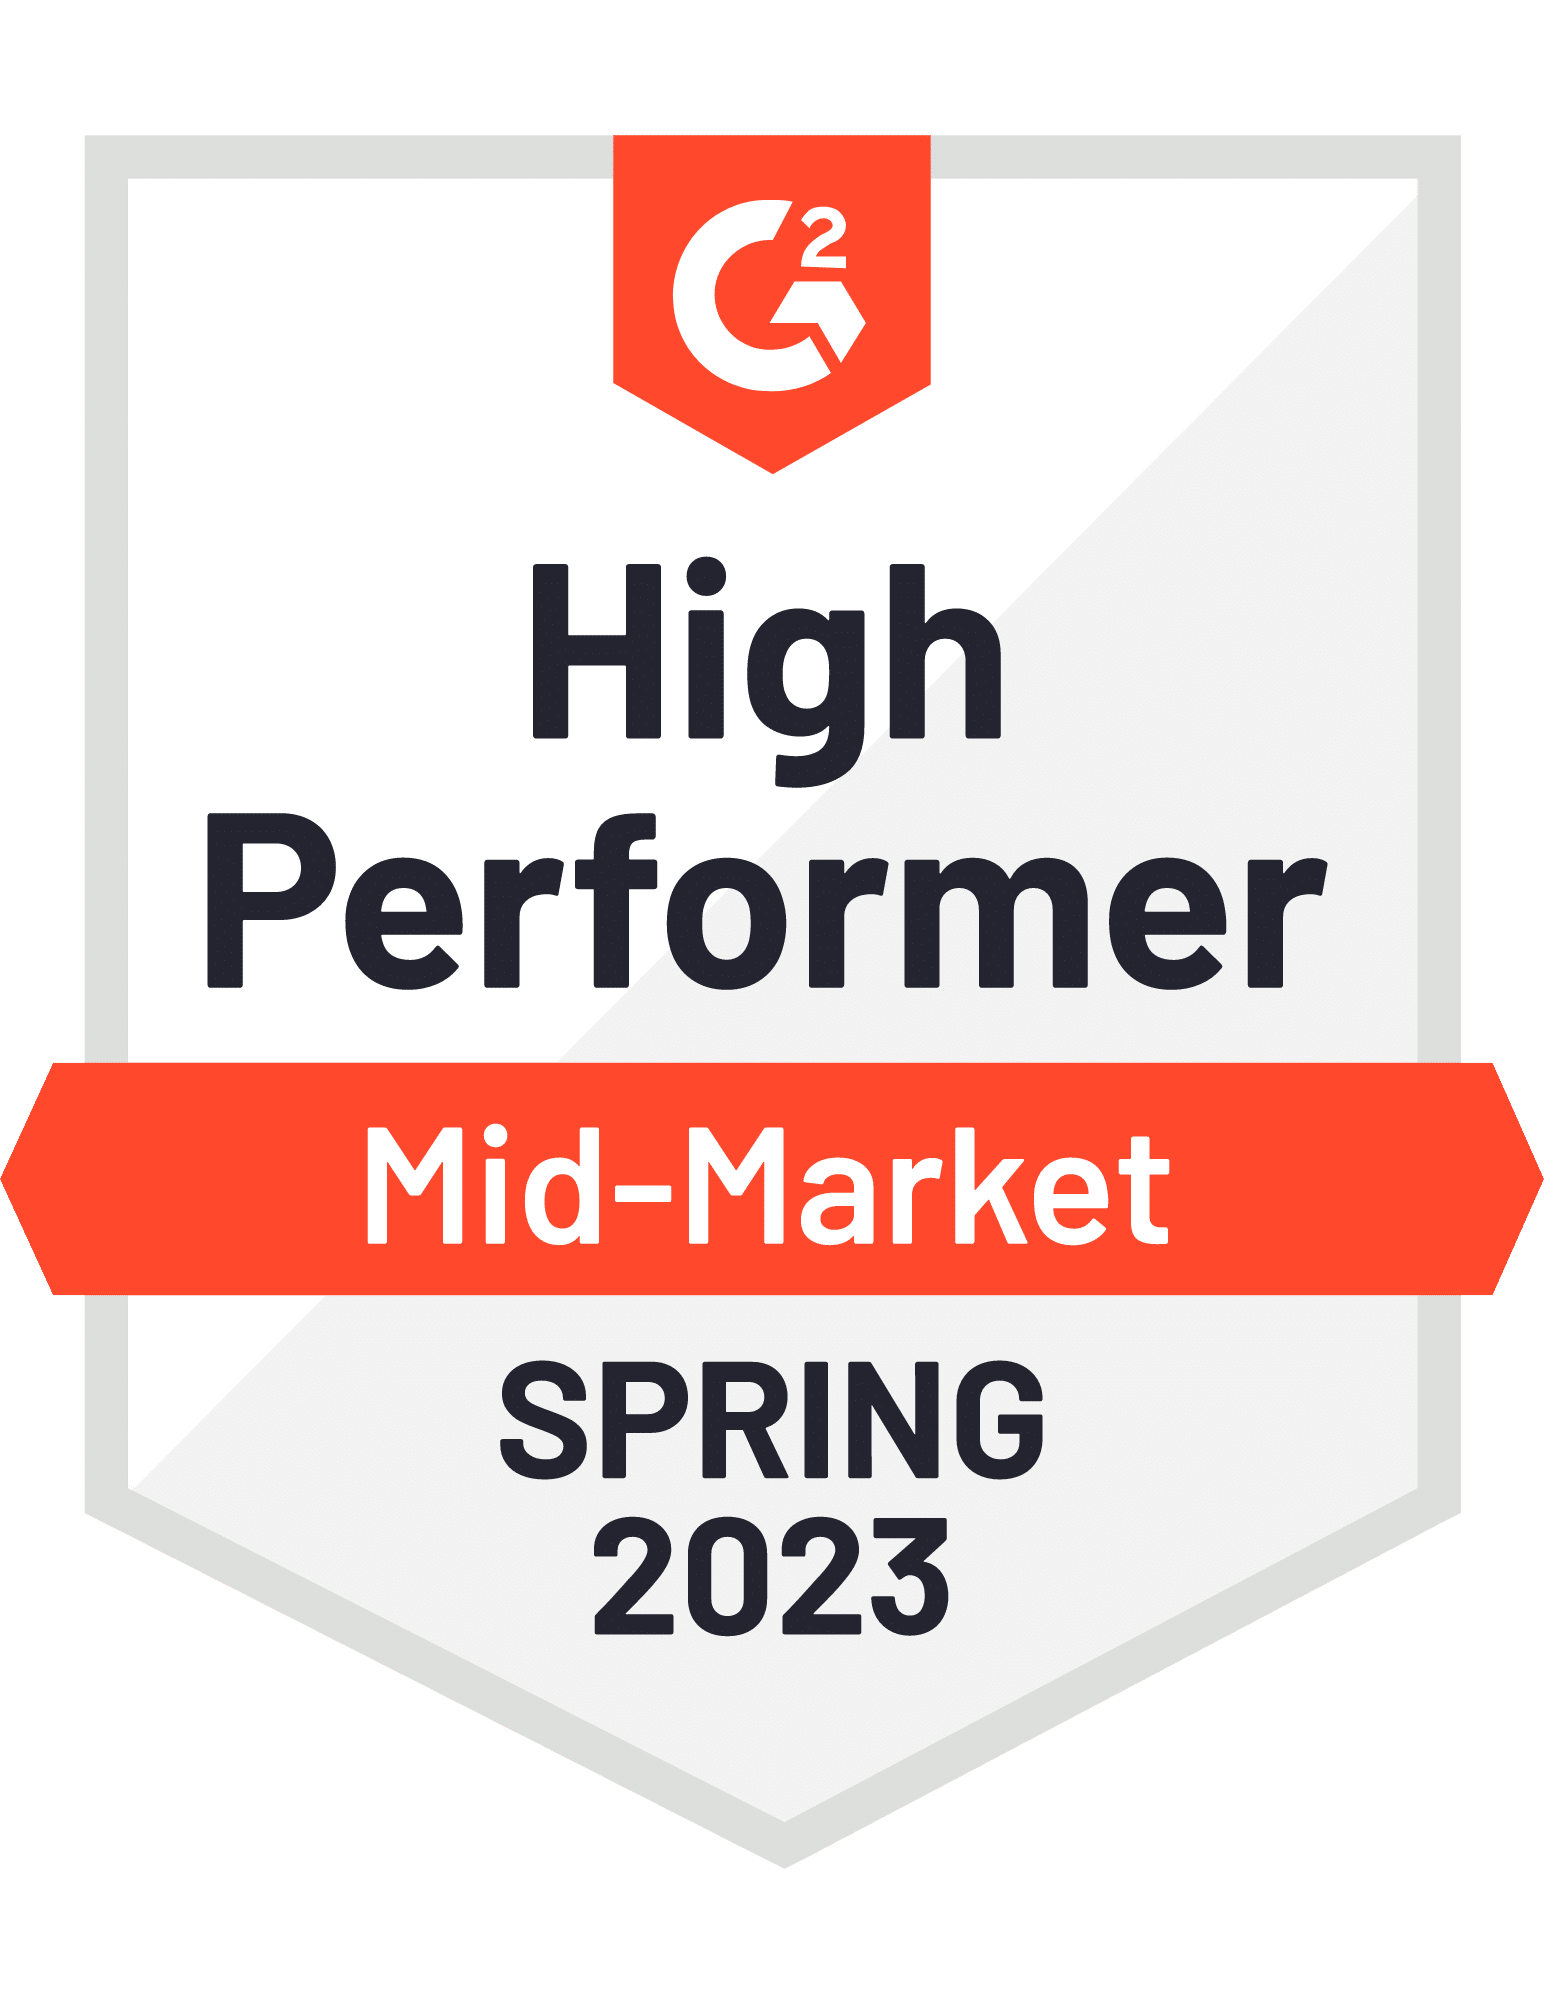 Mid-Market High Performer Spring 2023 G2 Award